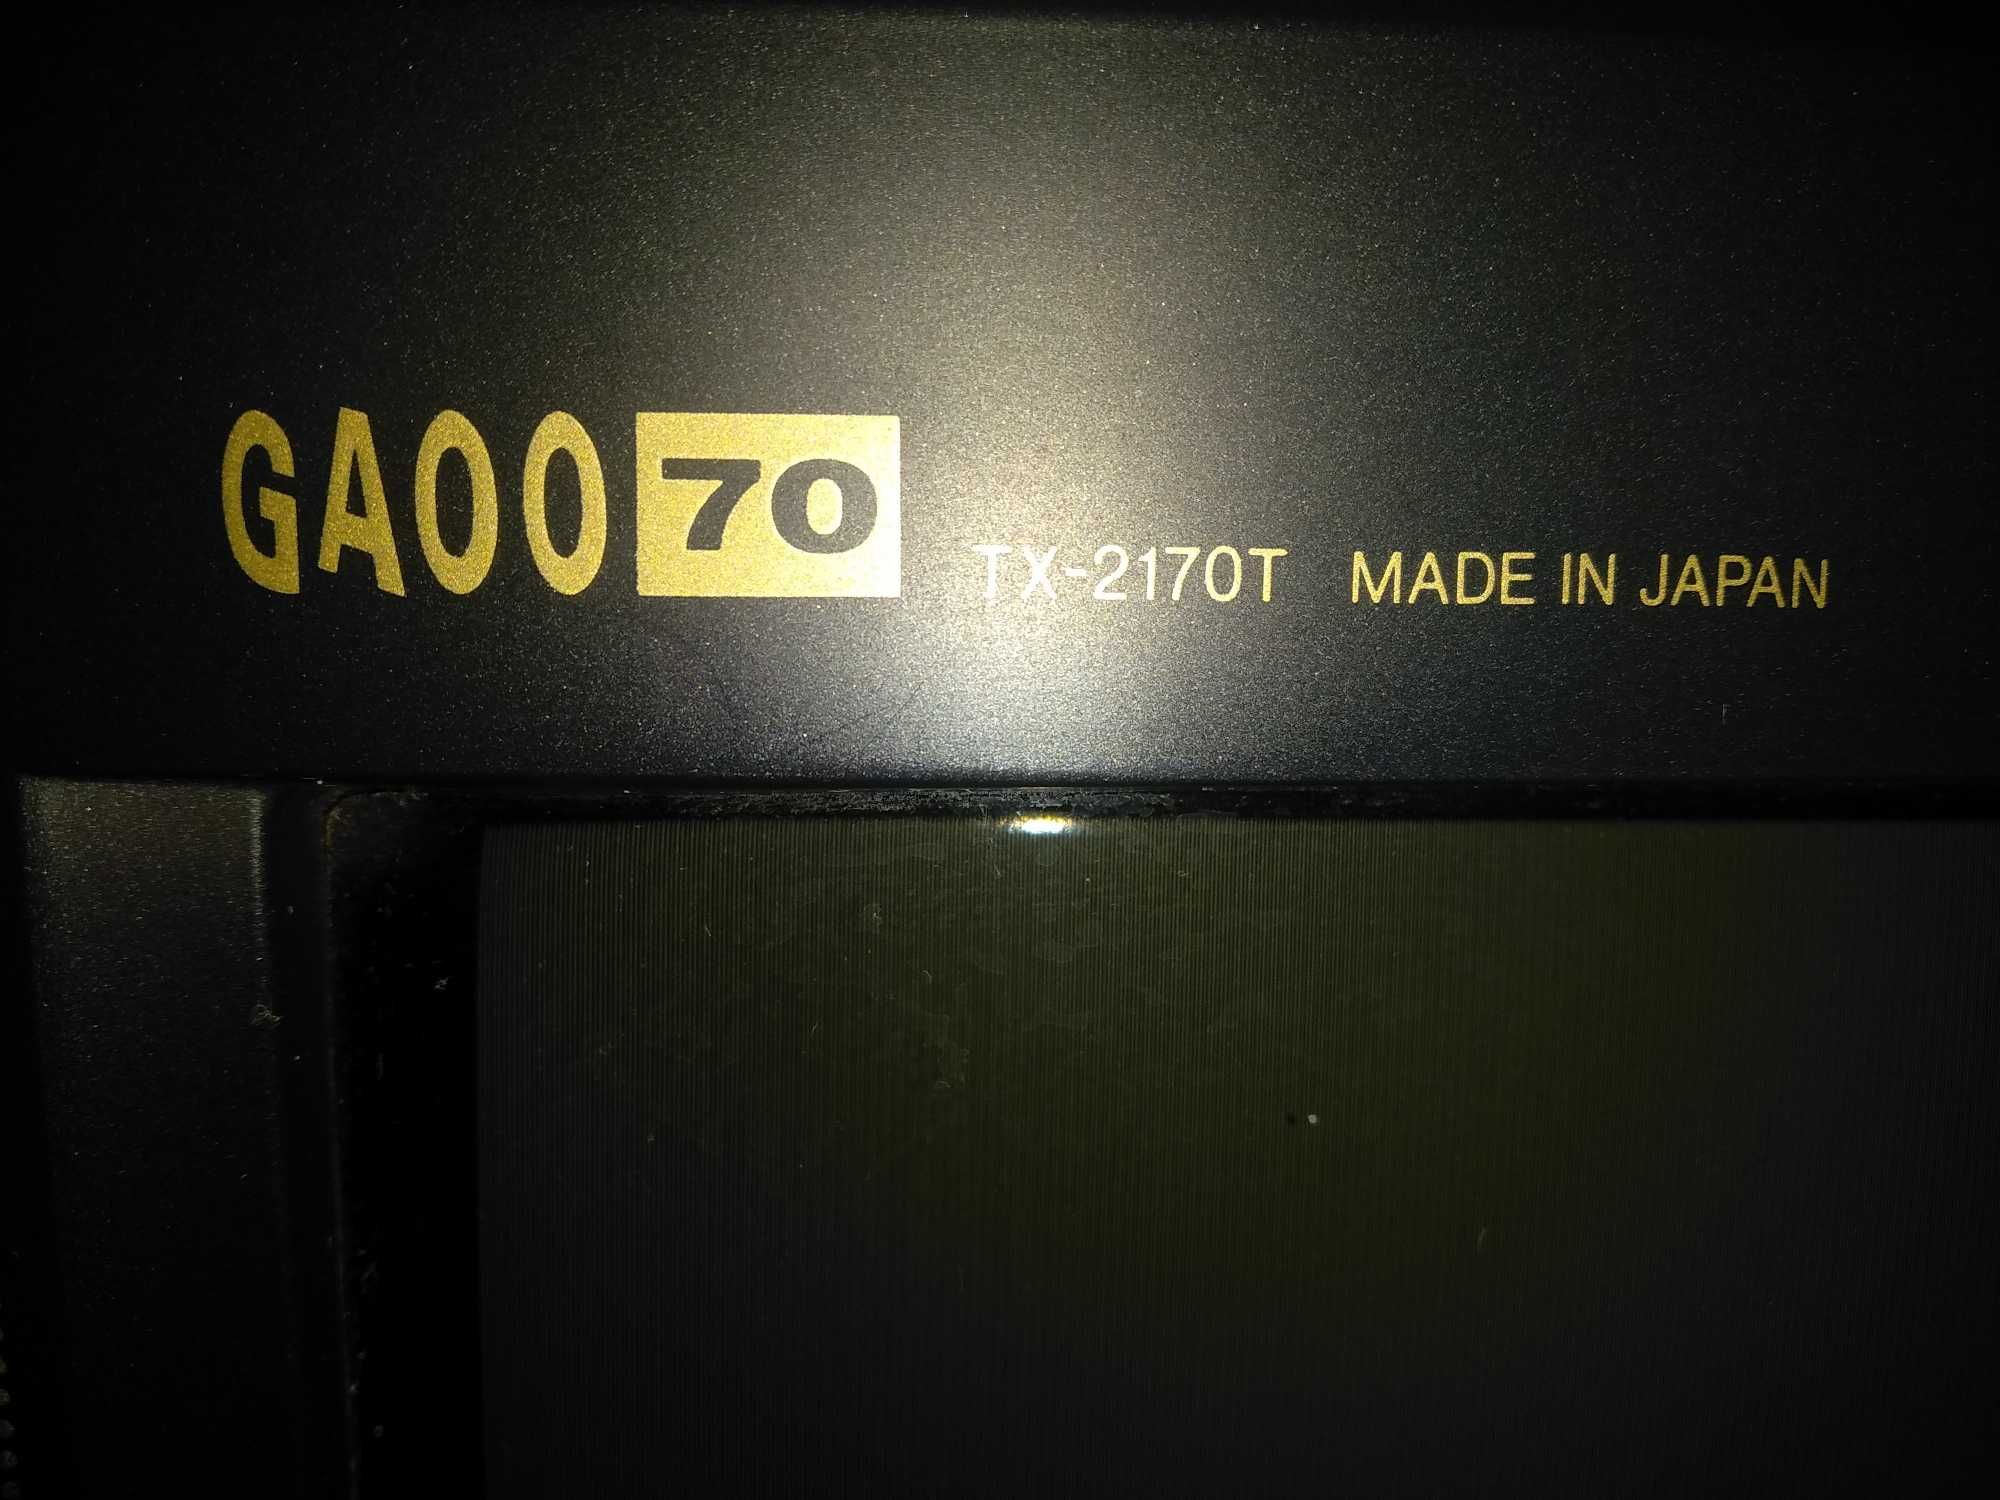 Телевизор: Panasonic GAOO 70 TX-2170T (54 см) -Made in Japan.